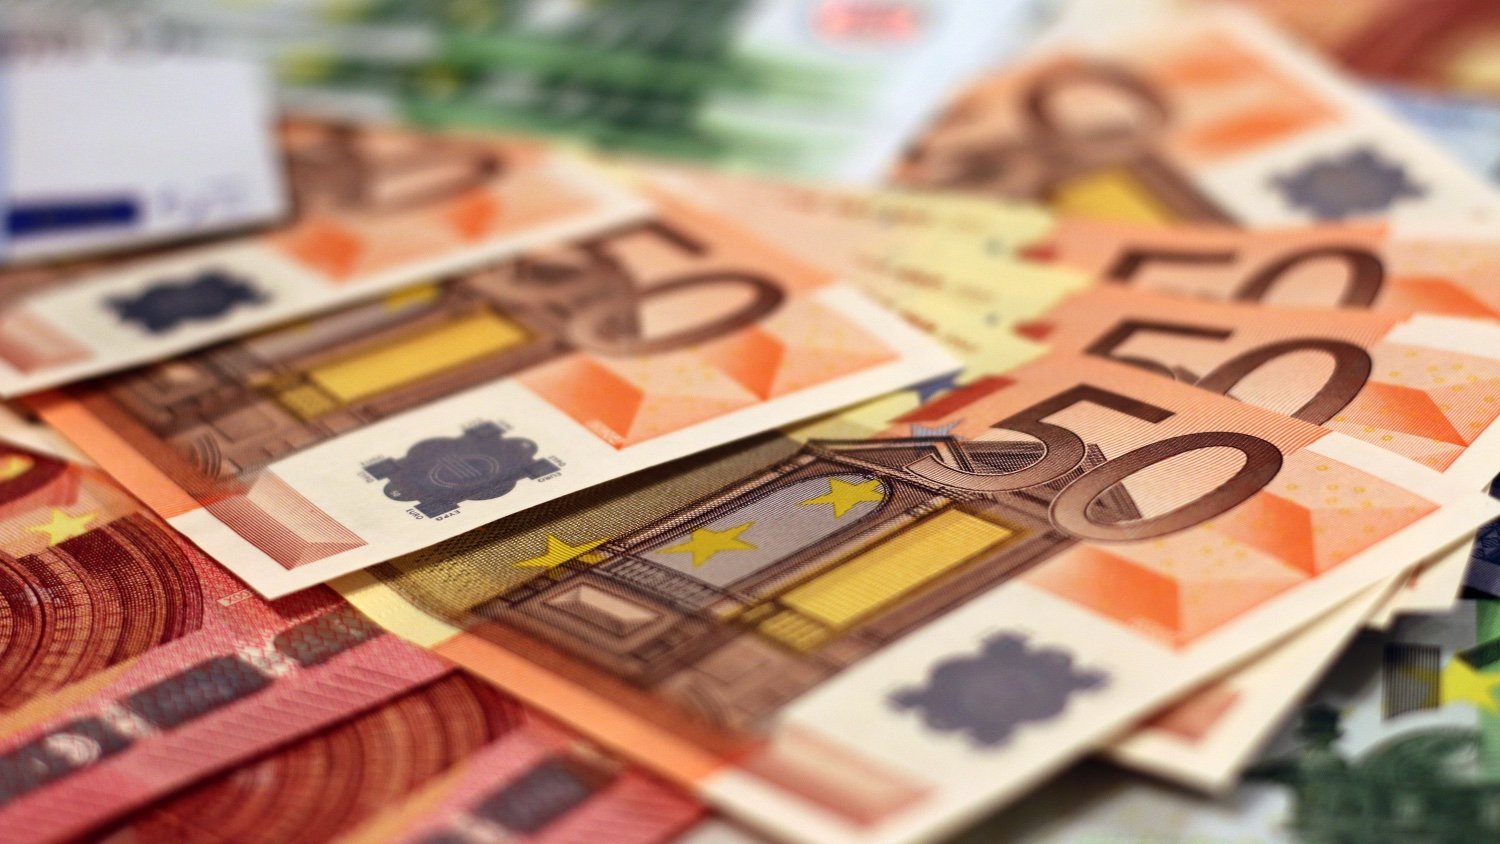 Banco de España, Una princesa europea permite detectar los billetes falsos  de euro